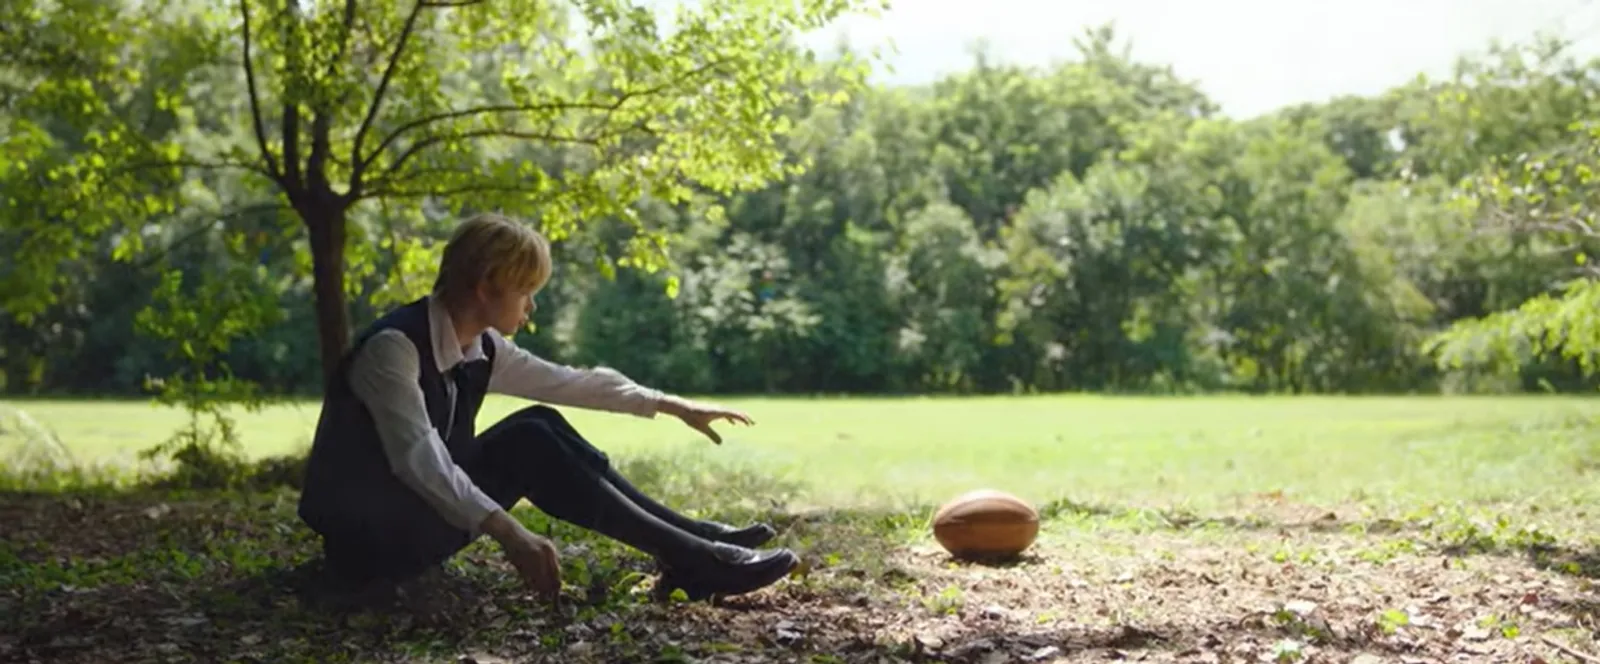 Jadi Pemain American Football, Ini Fakta MV ENHYPEN, "Tamed-Dashed"